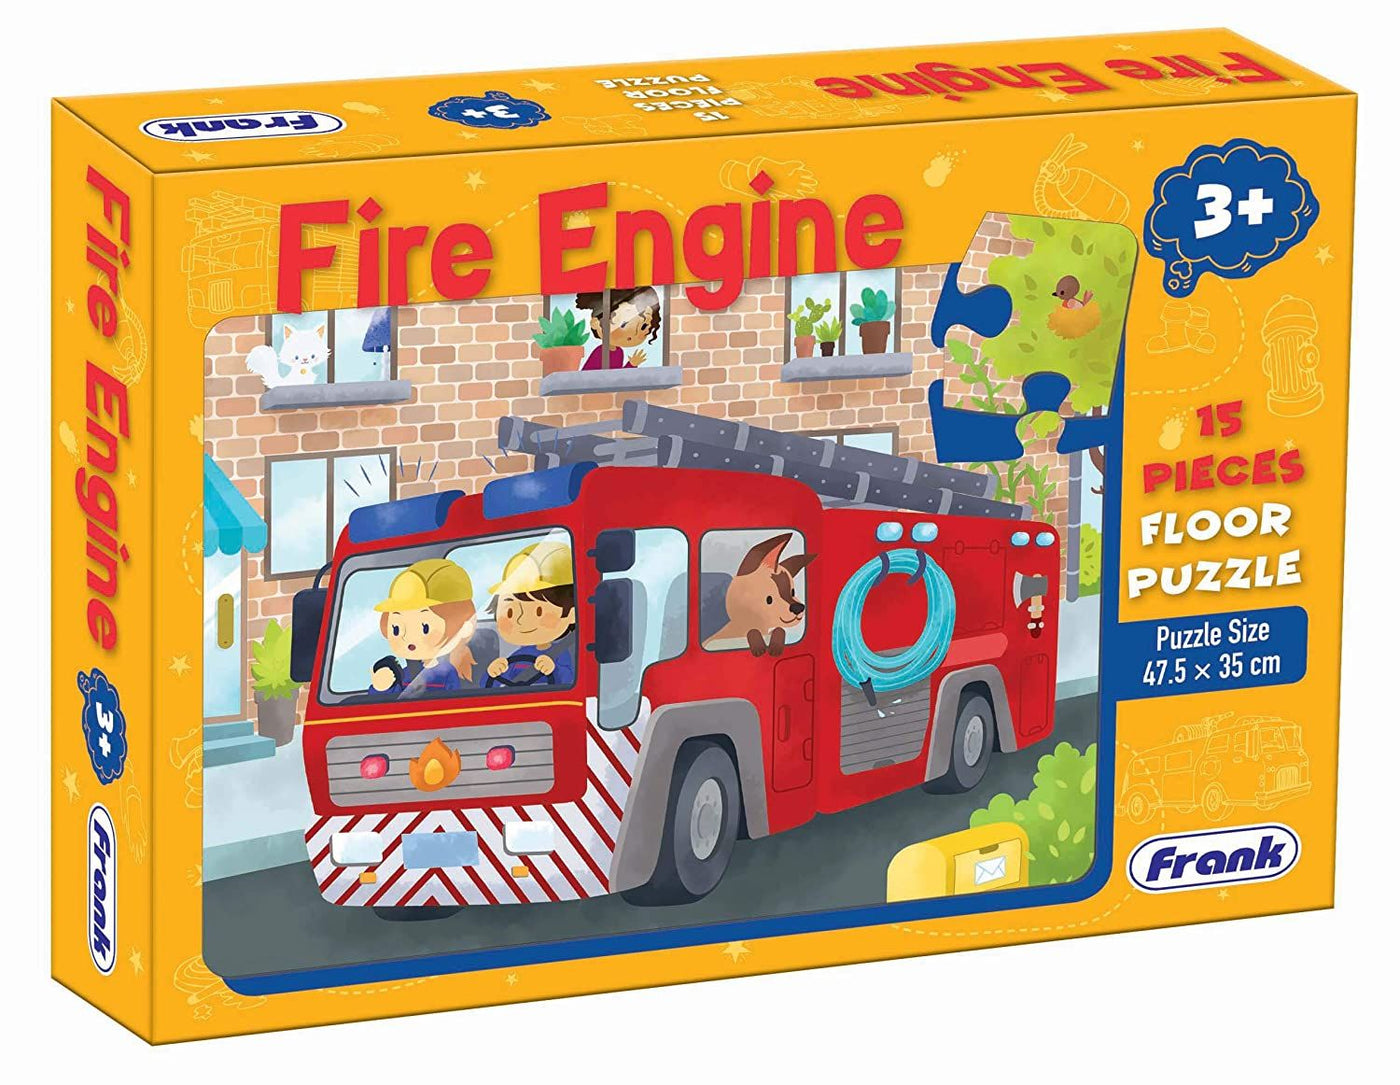 Fire Engine - 15 PCS Floor Puzzle | Frank